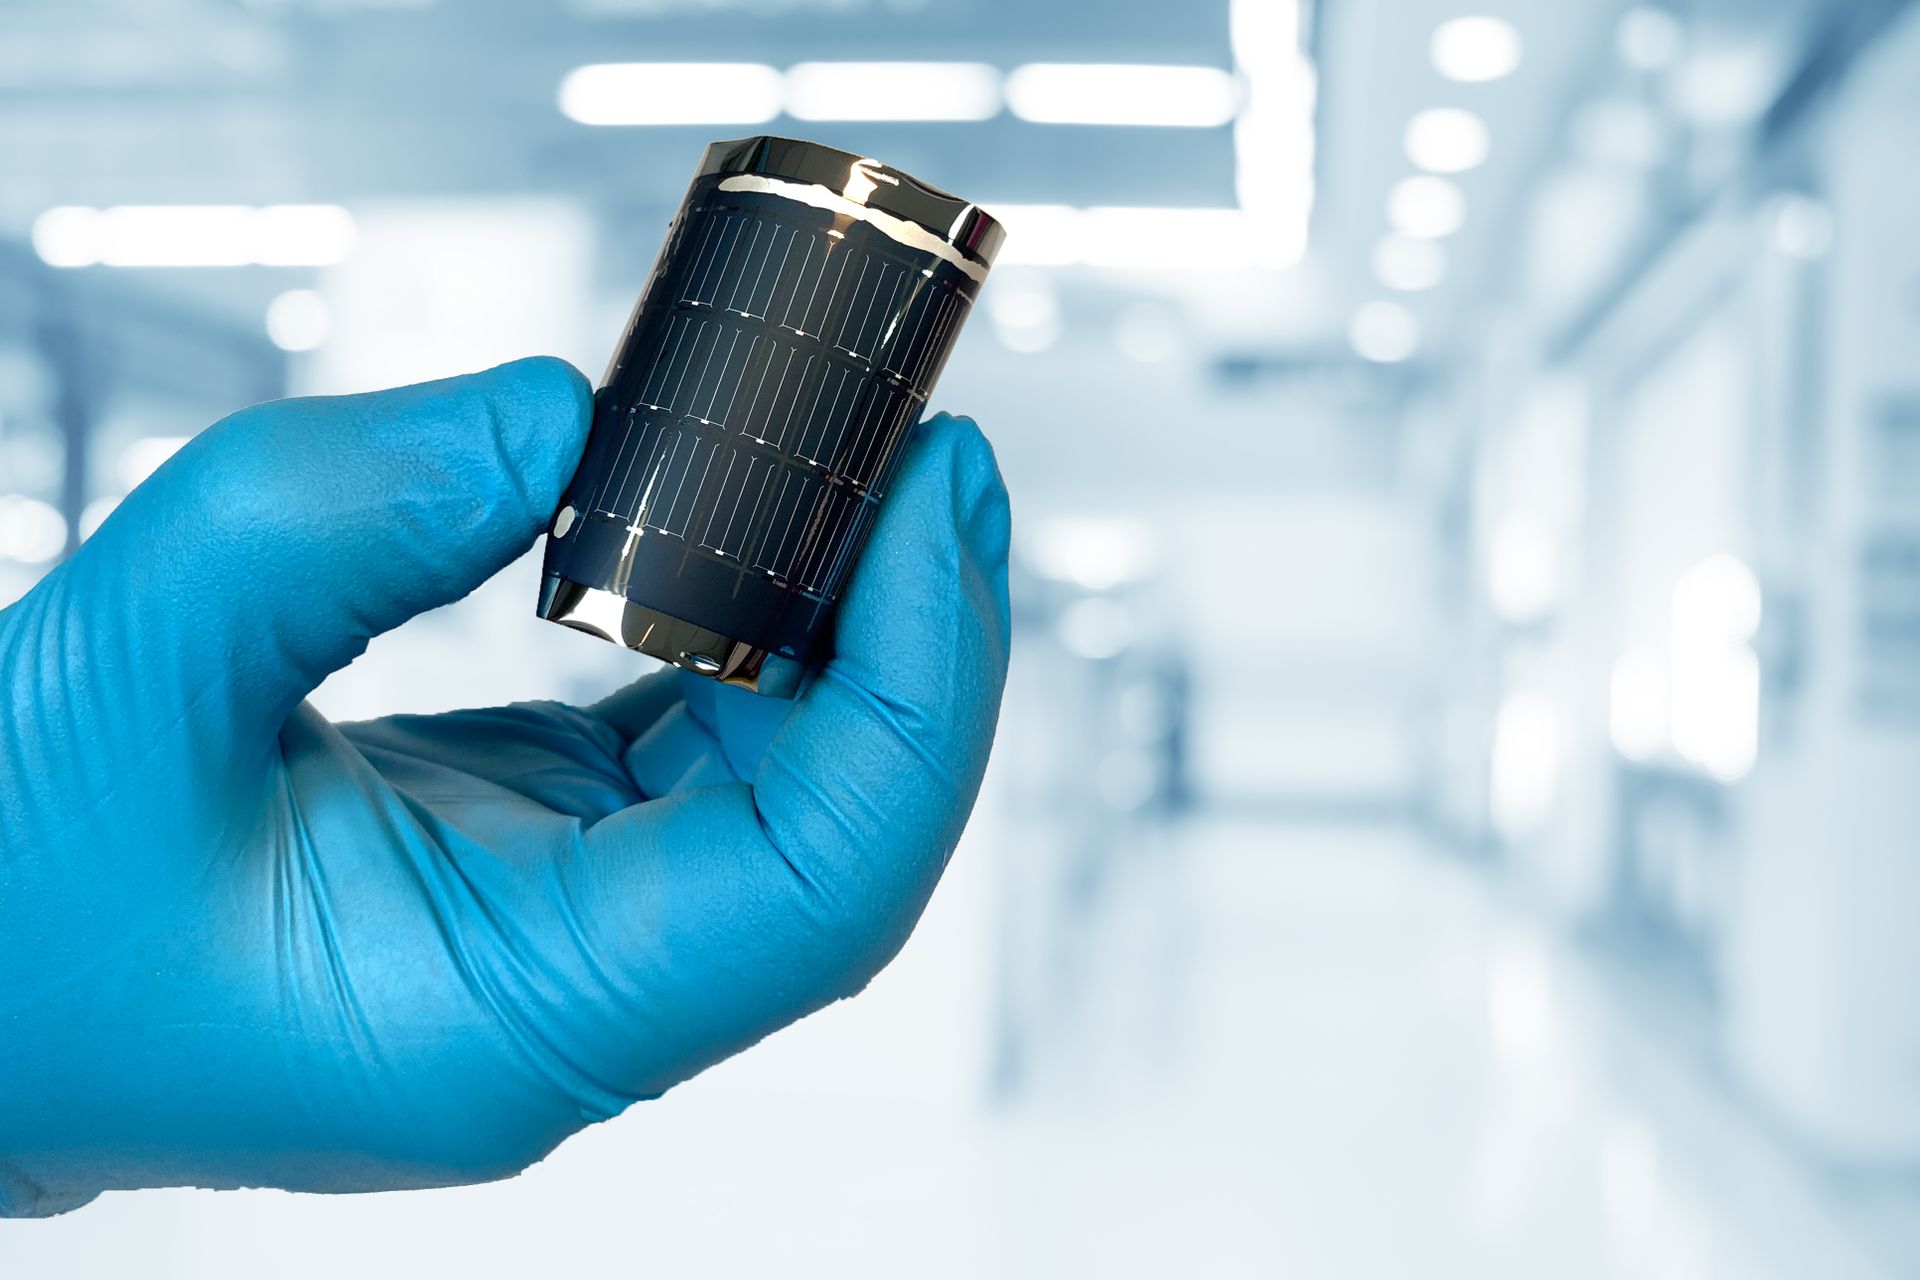 La cella solare CIGS flessibile sviluppata dall'EMPA